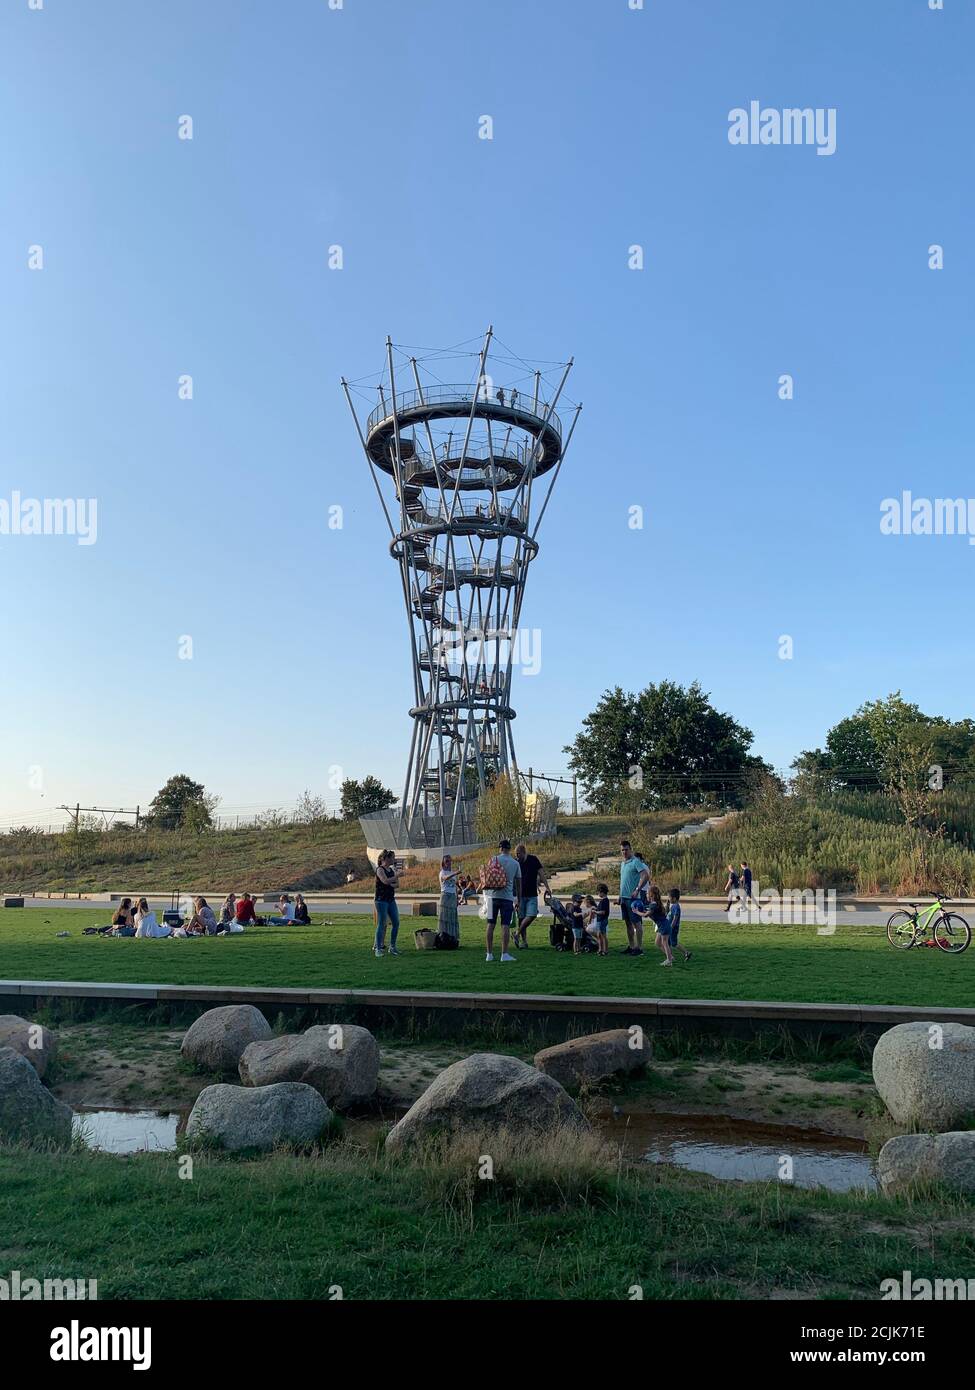 La gente disfruta de un día de verano alrededor de la torre Kempen en Spoorpark (Parque ferroviario). Tilburg, Brabante del Norte / países Bajos Foto de stock